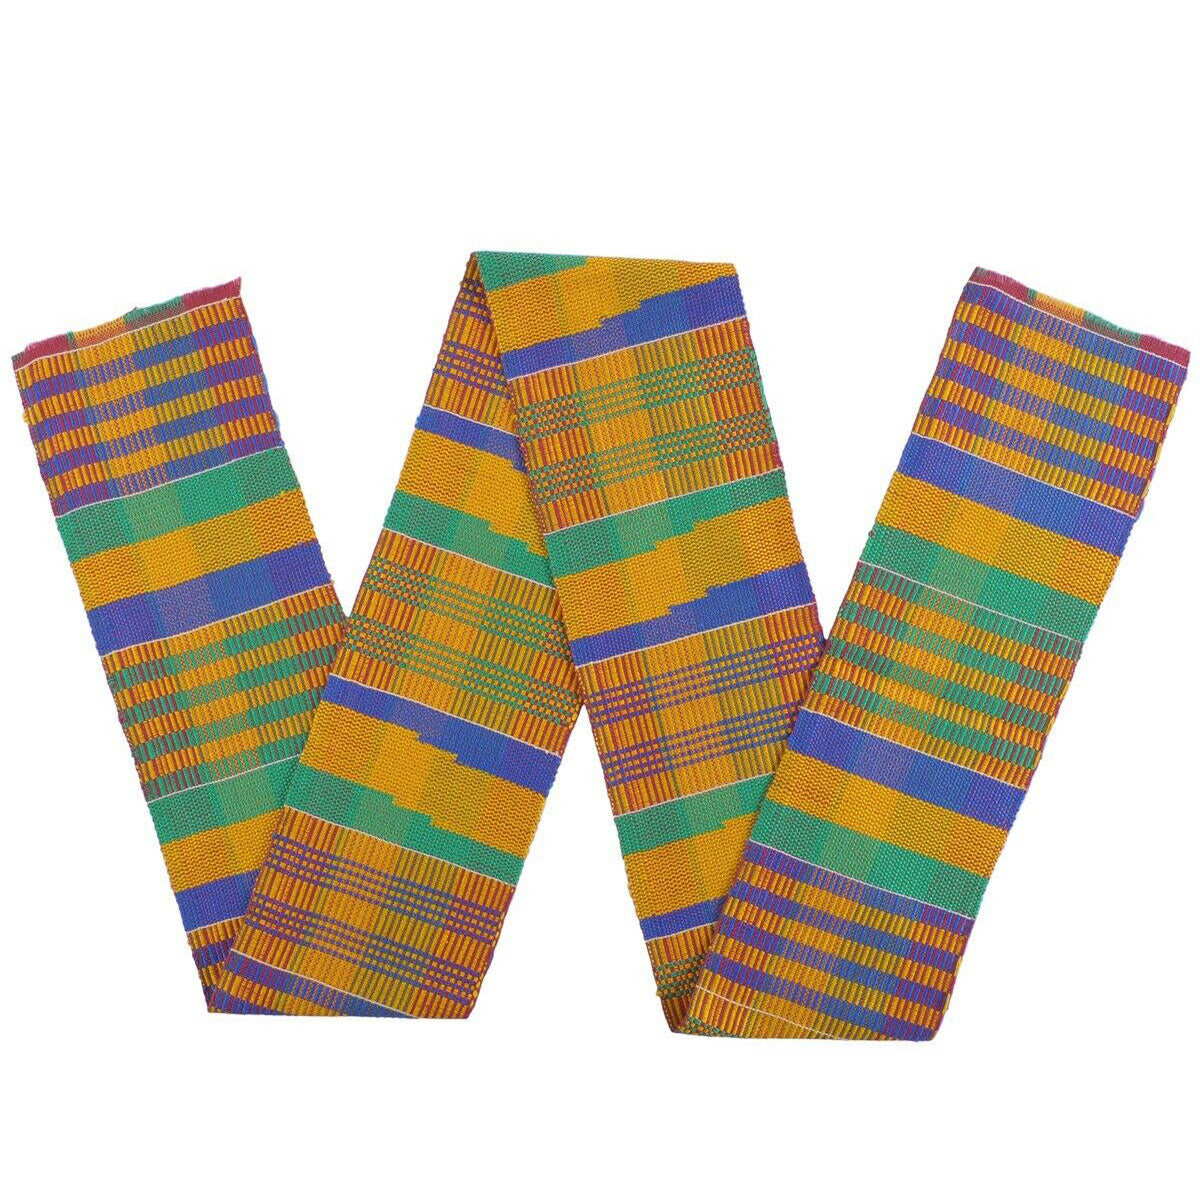 Kente afrikanische Kleidung Stola Schal Textil aus Ghana Stoff neue authentische Schärpe - Tribalgh